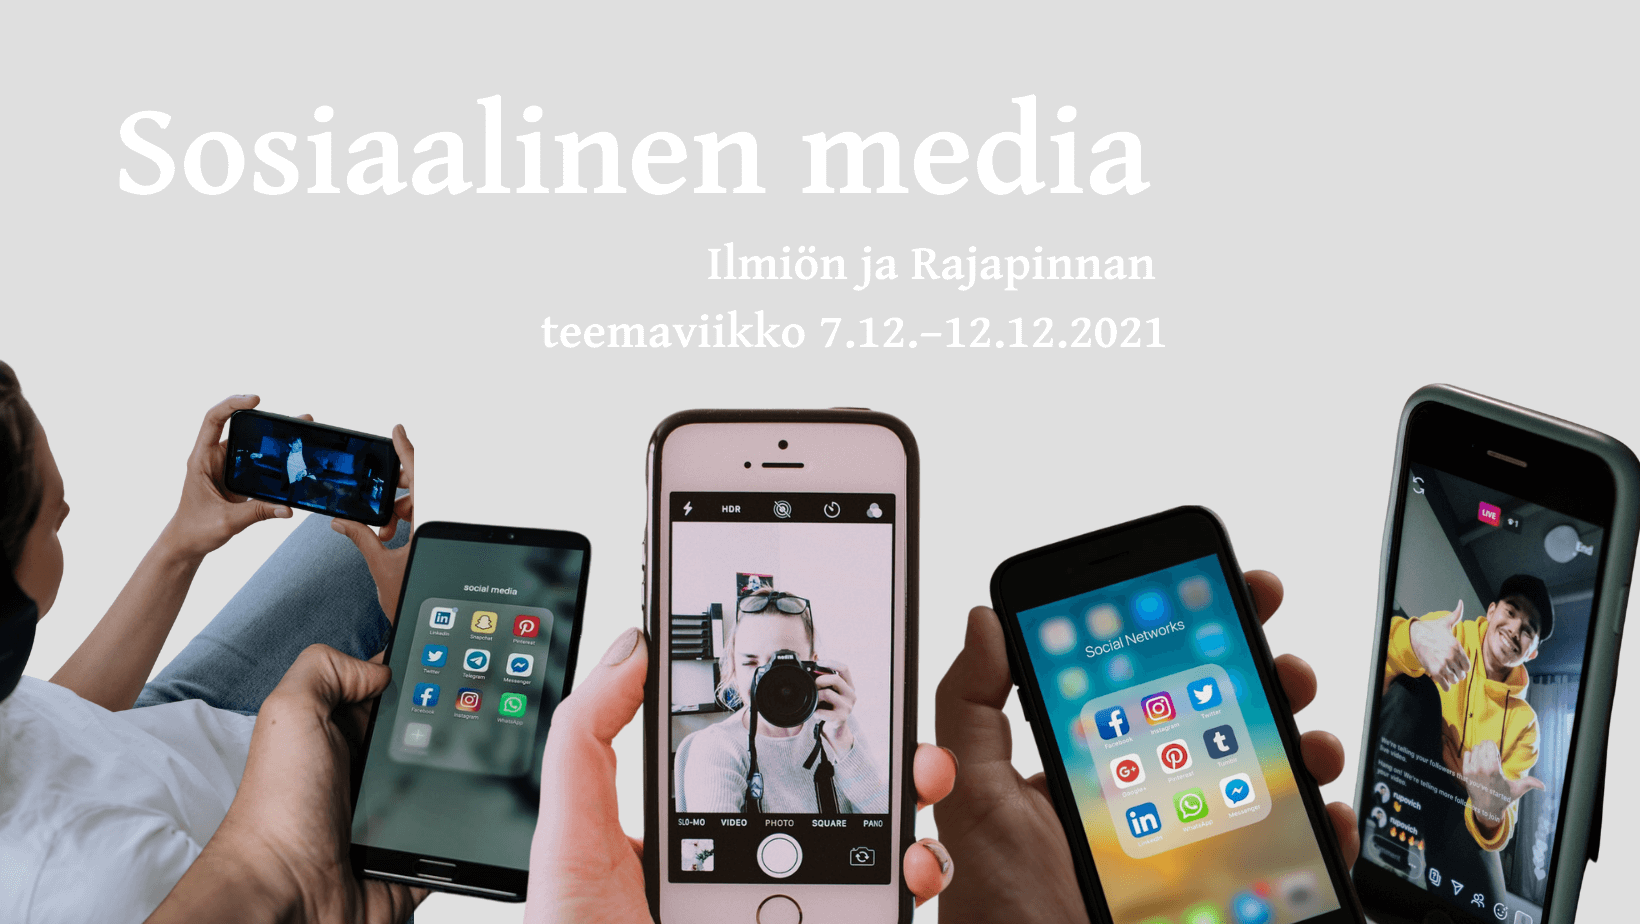 Ilmiön ja Rajapinnan Sosiaalinen media -teemaviikko 7.12.–12.12.2021